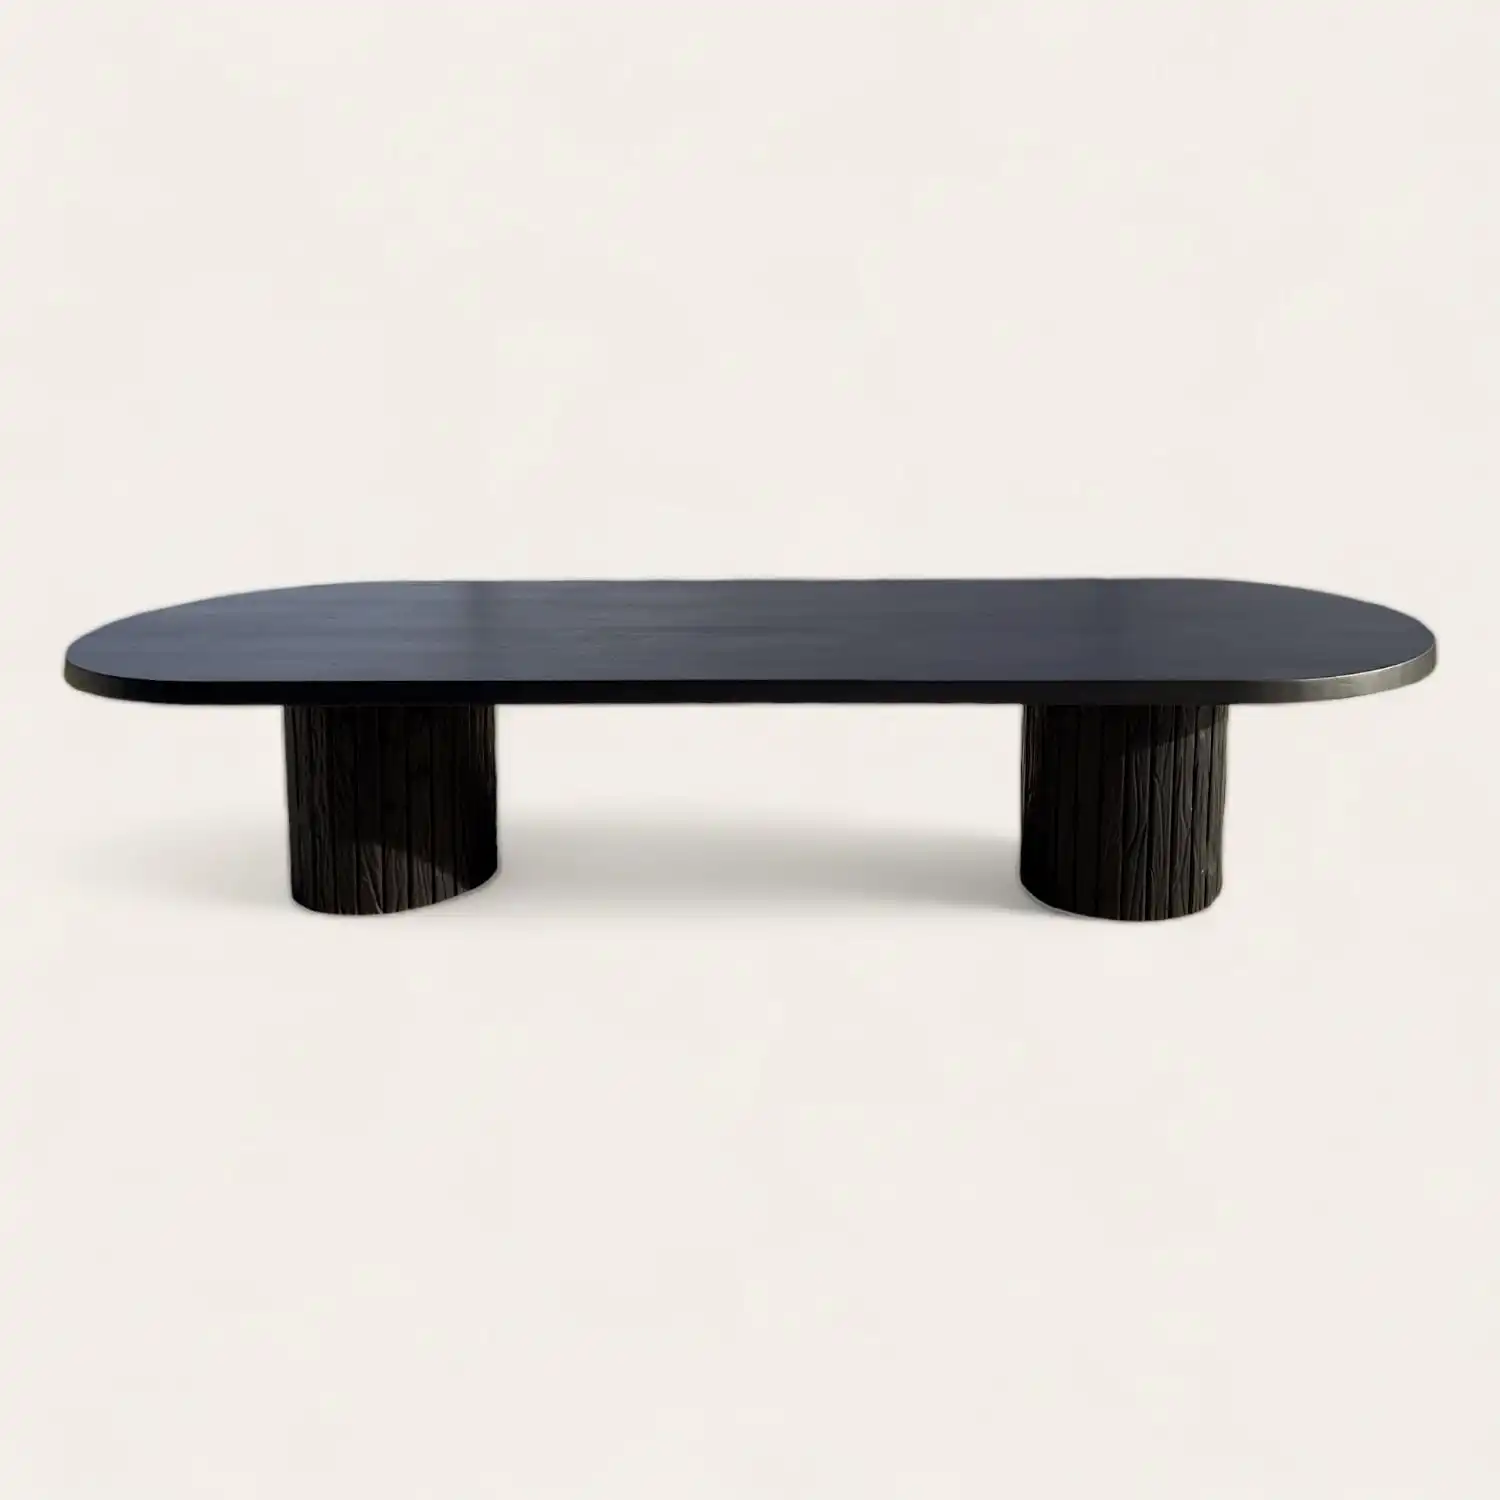  Une table ovale noire avec un piètement en bois. 